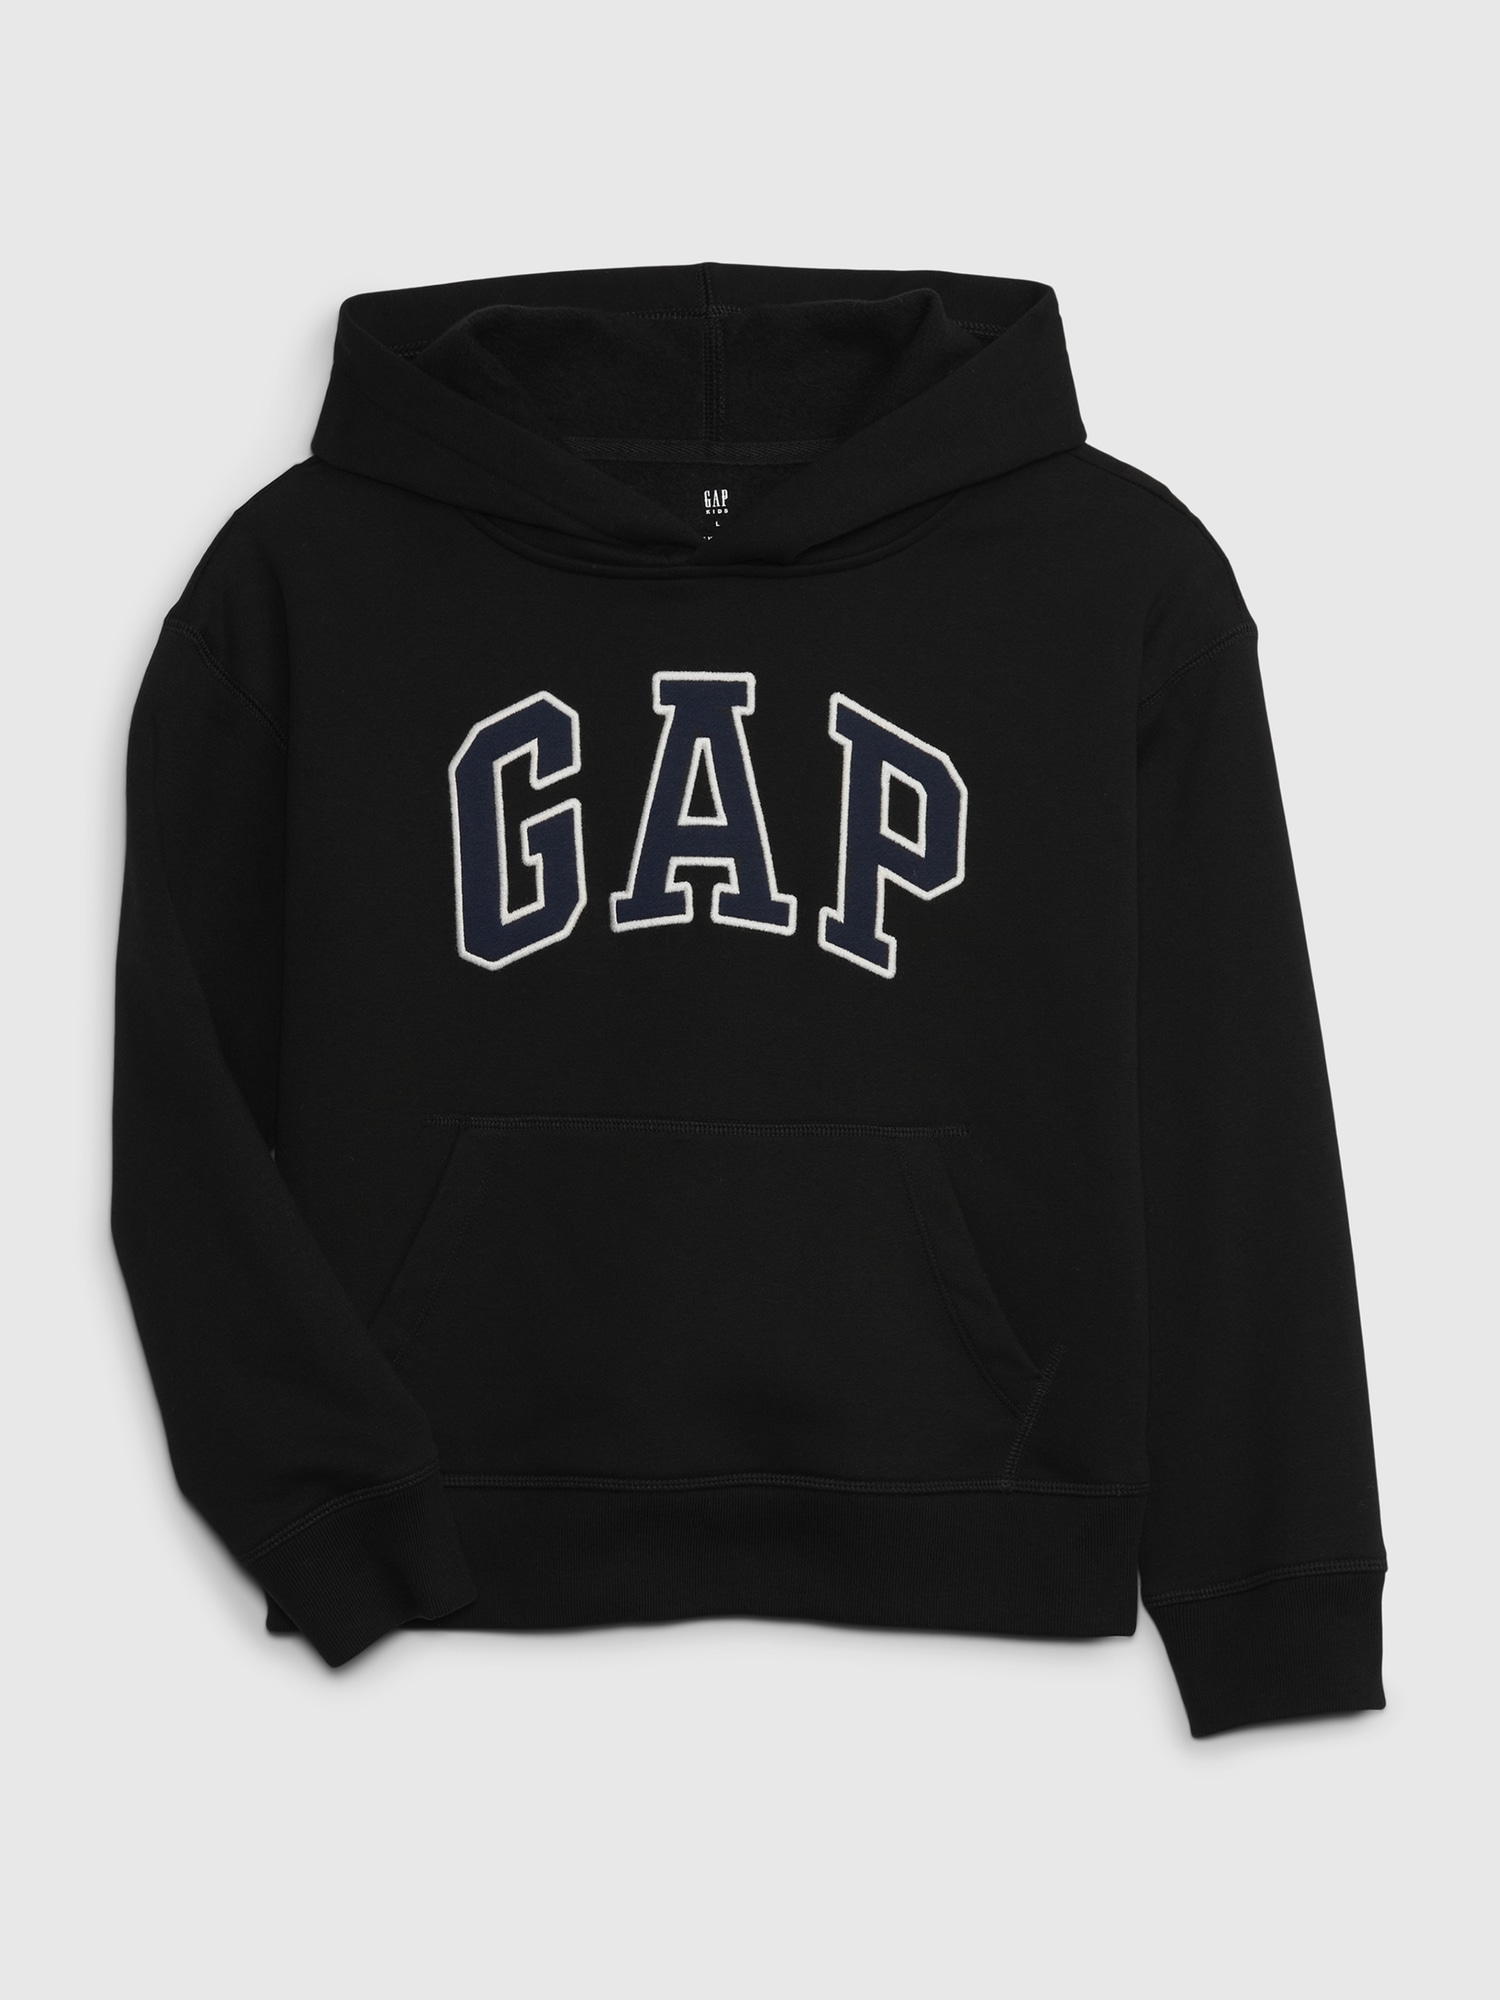 갭 Kids Gap Arch Logo Hoodie